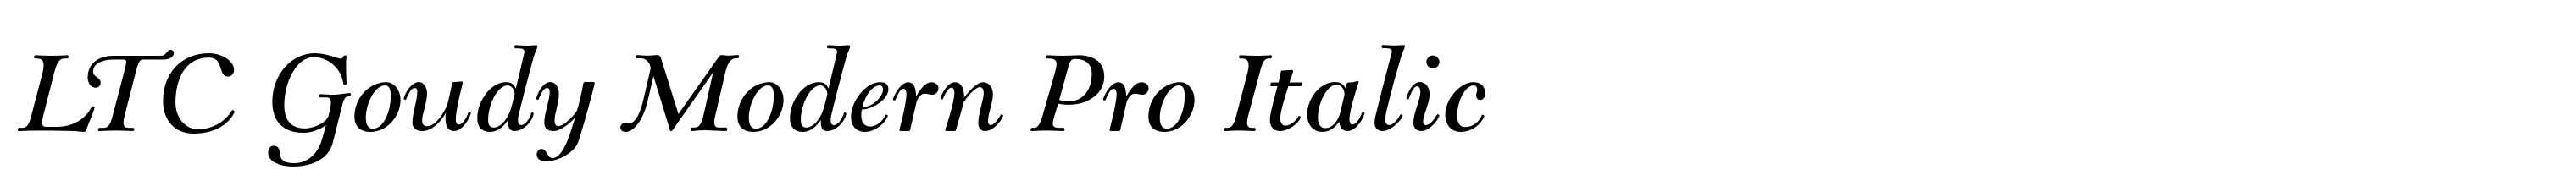 LTC Goudy Modern Pro Italic